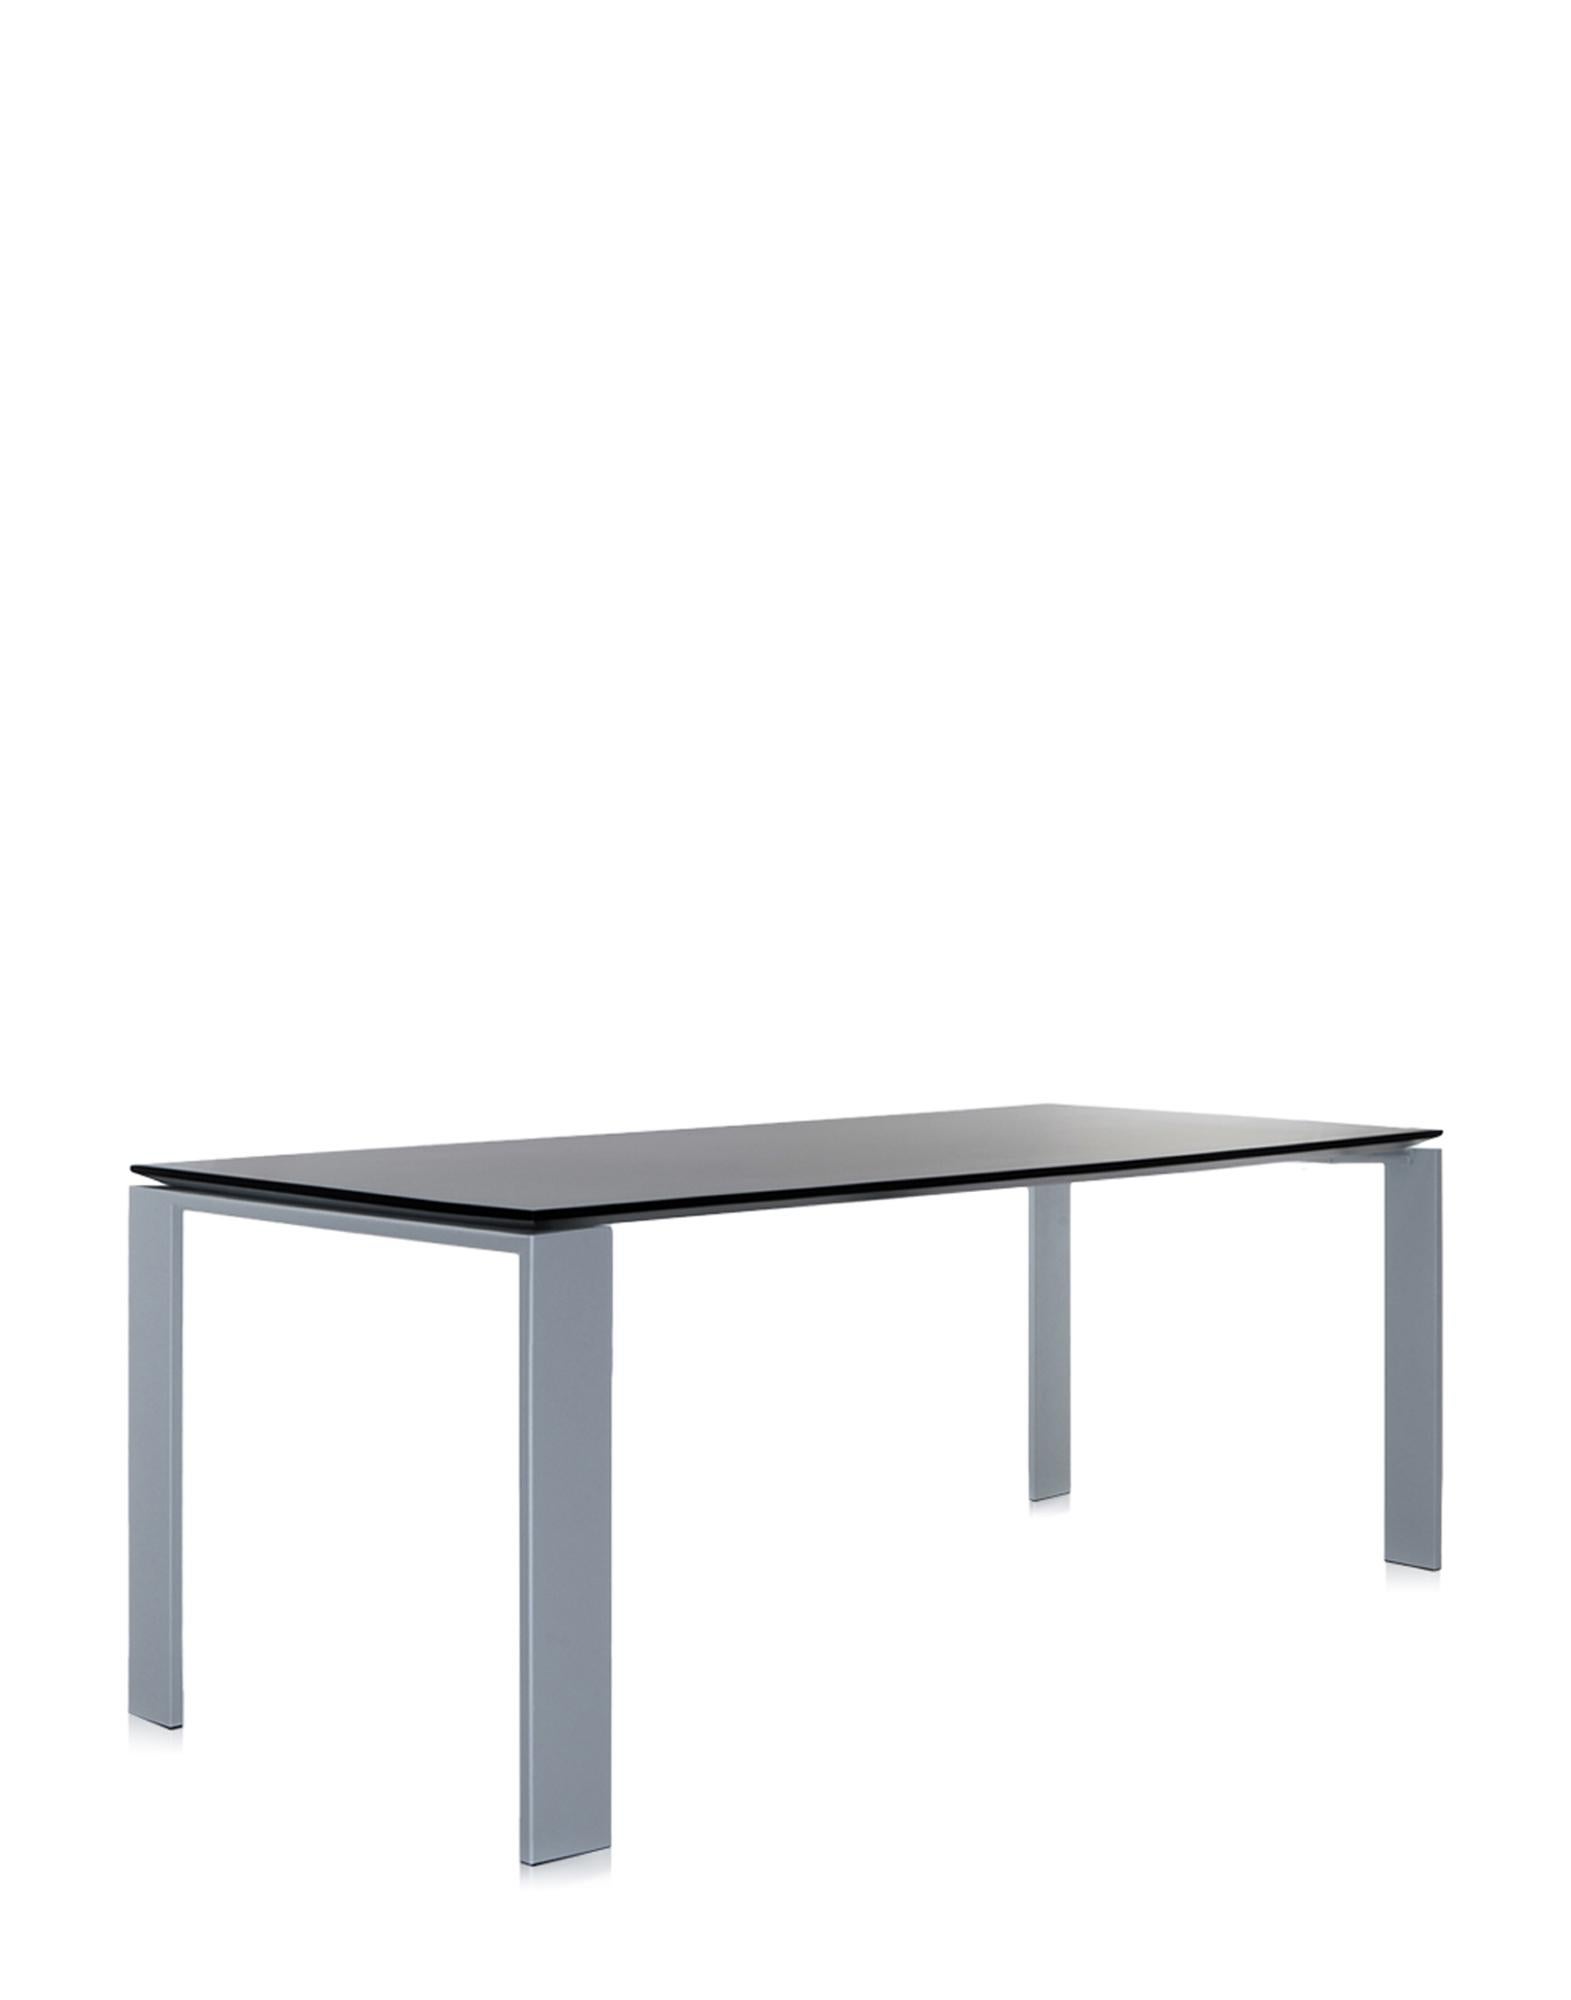 Cette table fonctionnelle et raffinée présente également un design géométrique strict. Grâce à l'élégante solution de design, la position du plateau mince de la table permet de placer facilement des tiroirs ou des meubles de rangement pour le